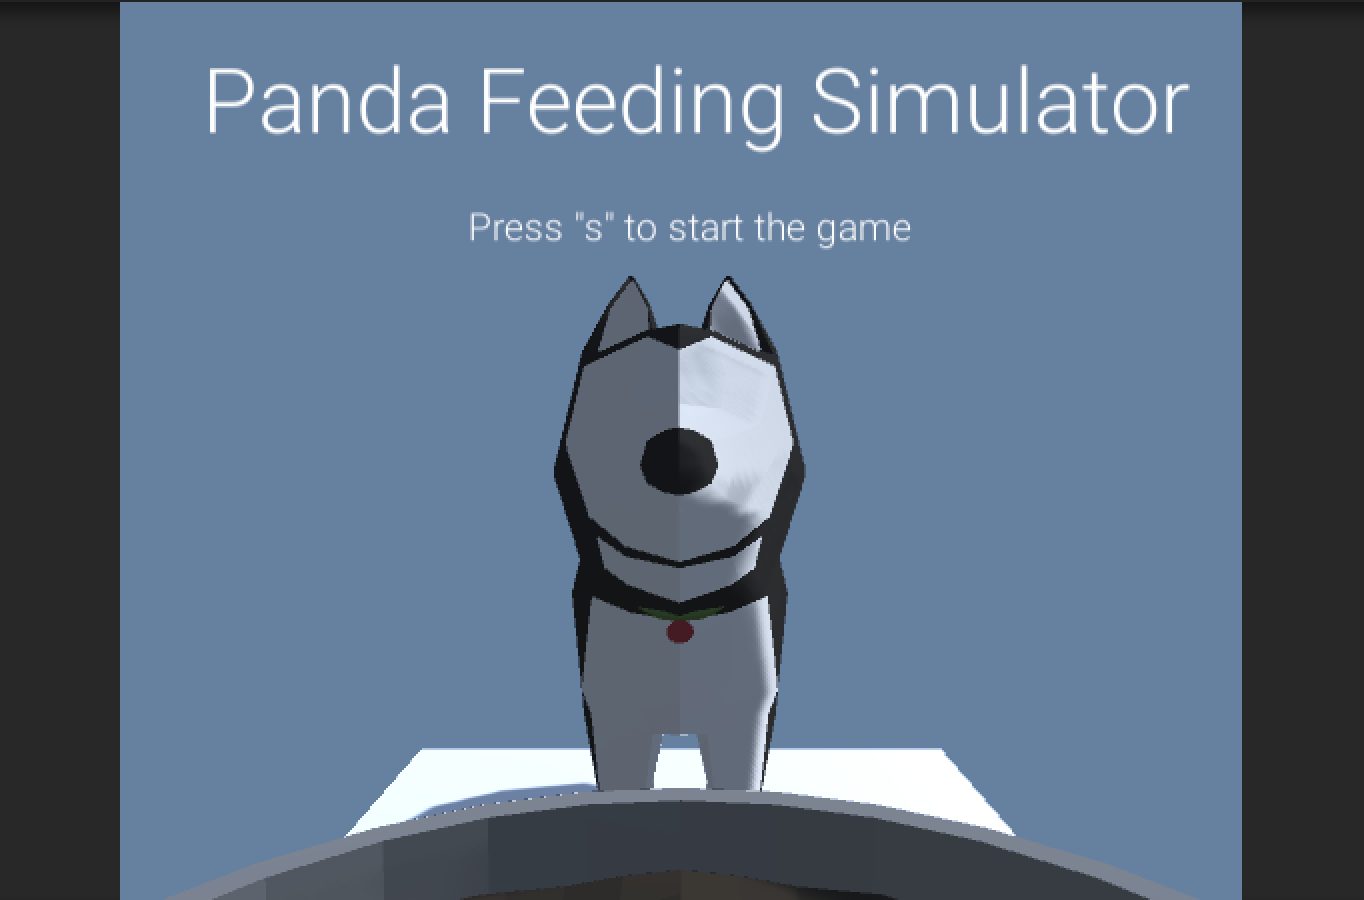 panda feeding simulator